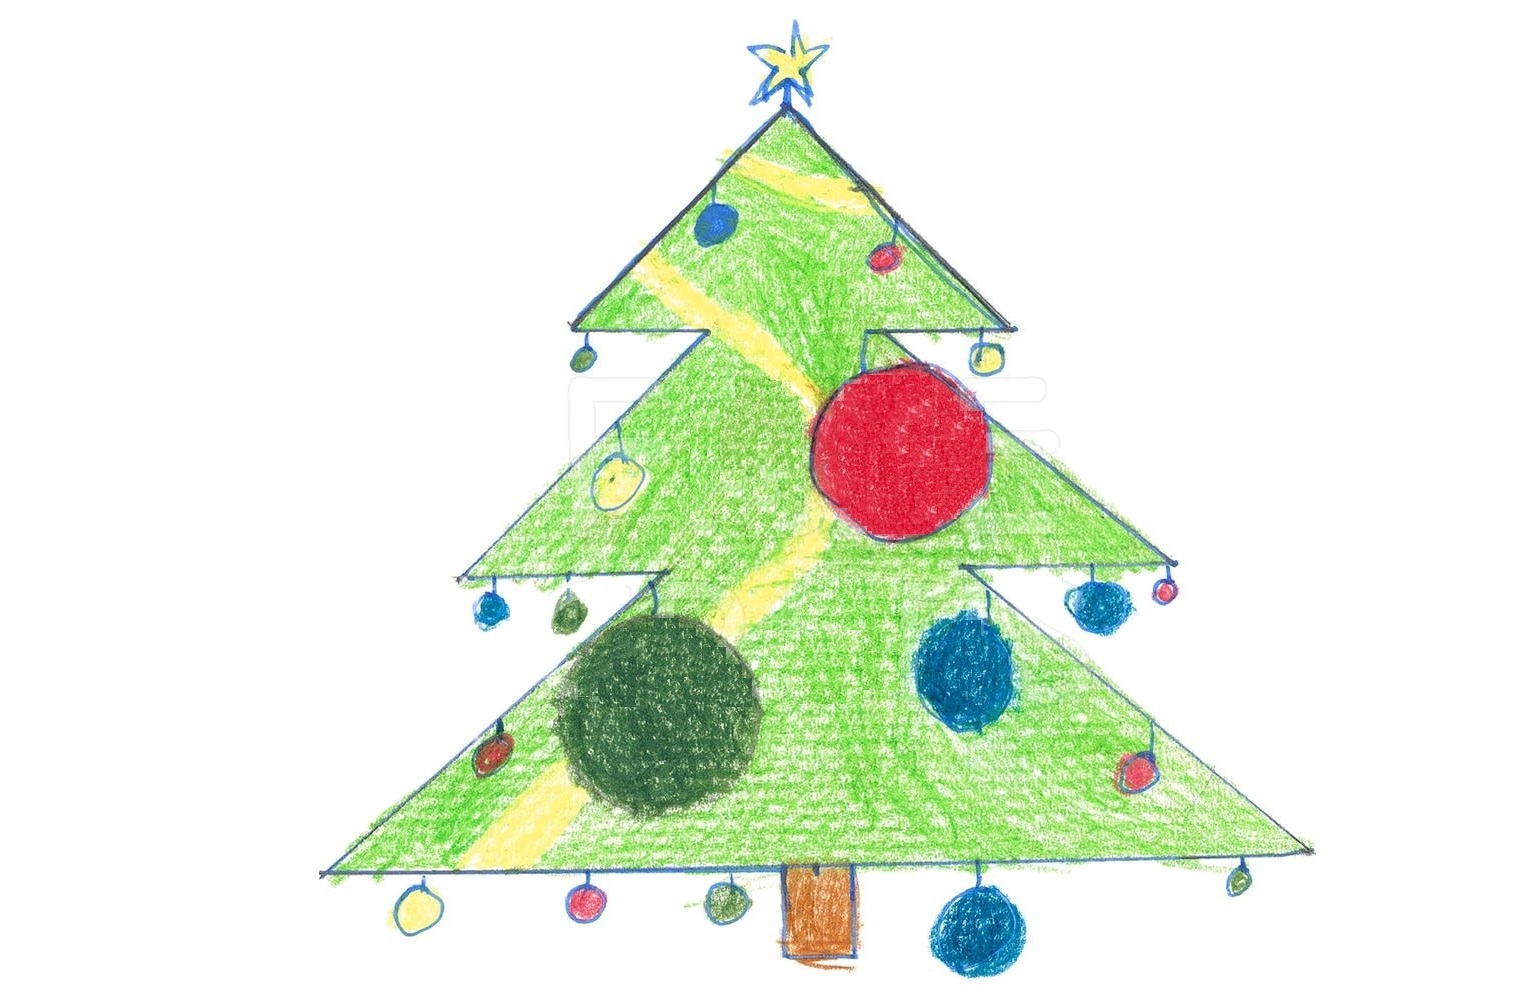 weihnachtsbaum-tannenbaum-kronenberg-jesse-illuminatoren-zeichnung-katholisch-kirchliche-jugendarbeit-hd-wm